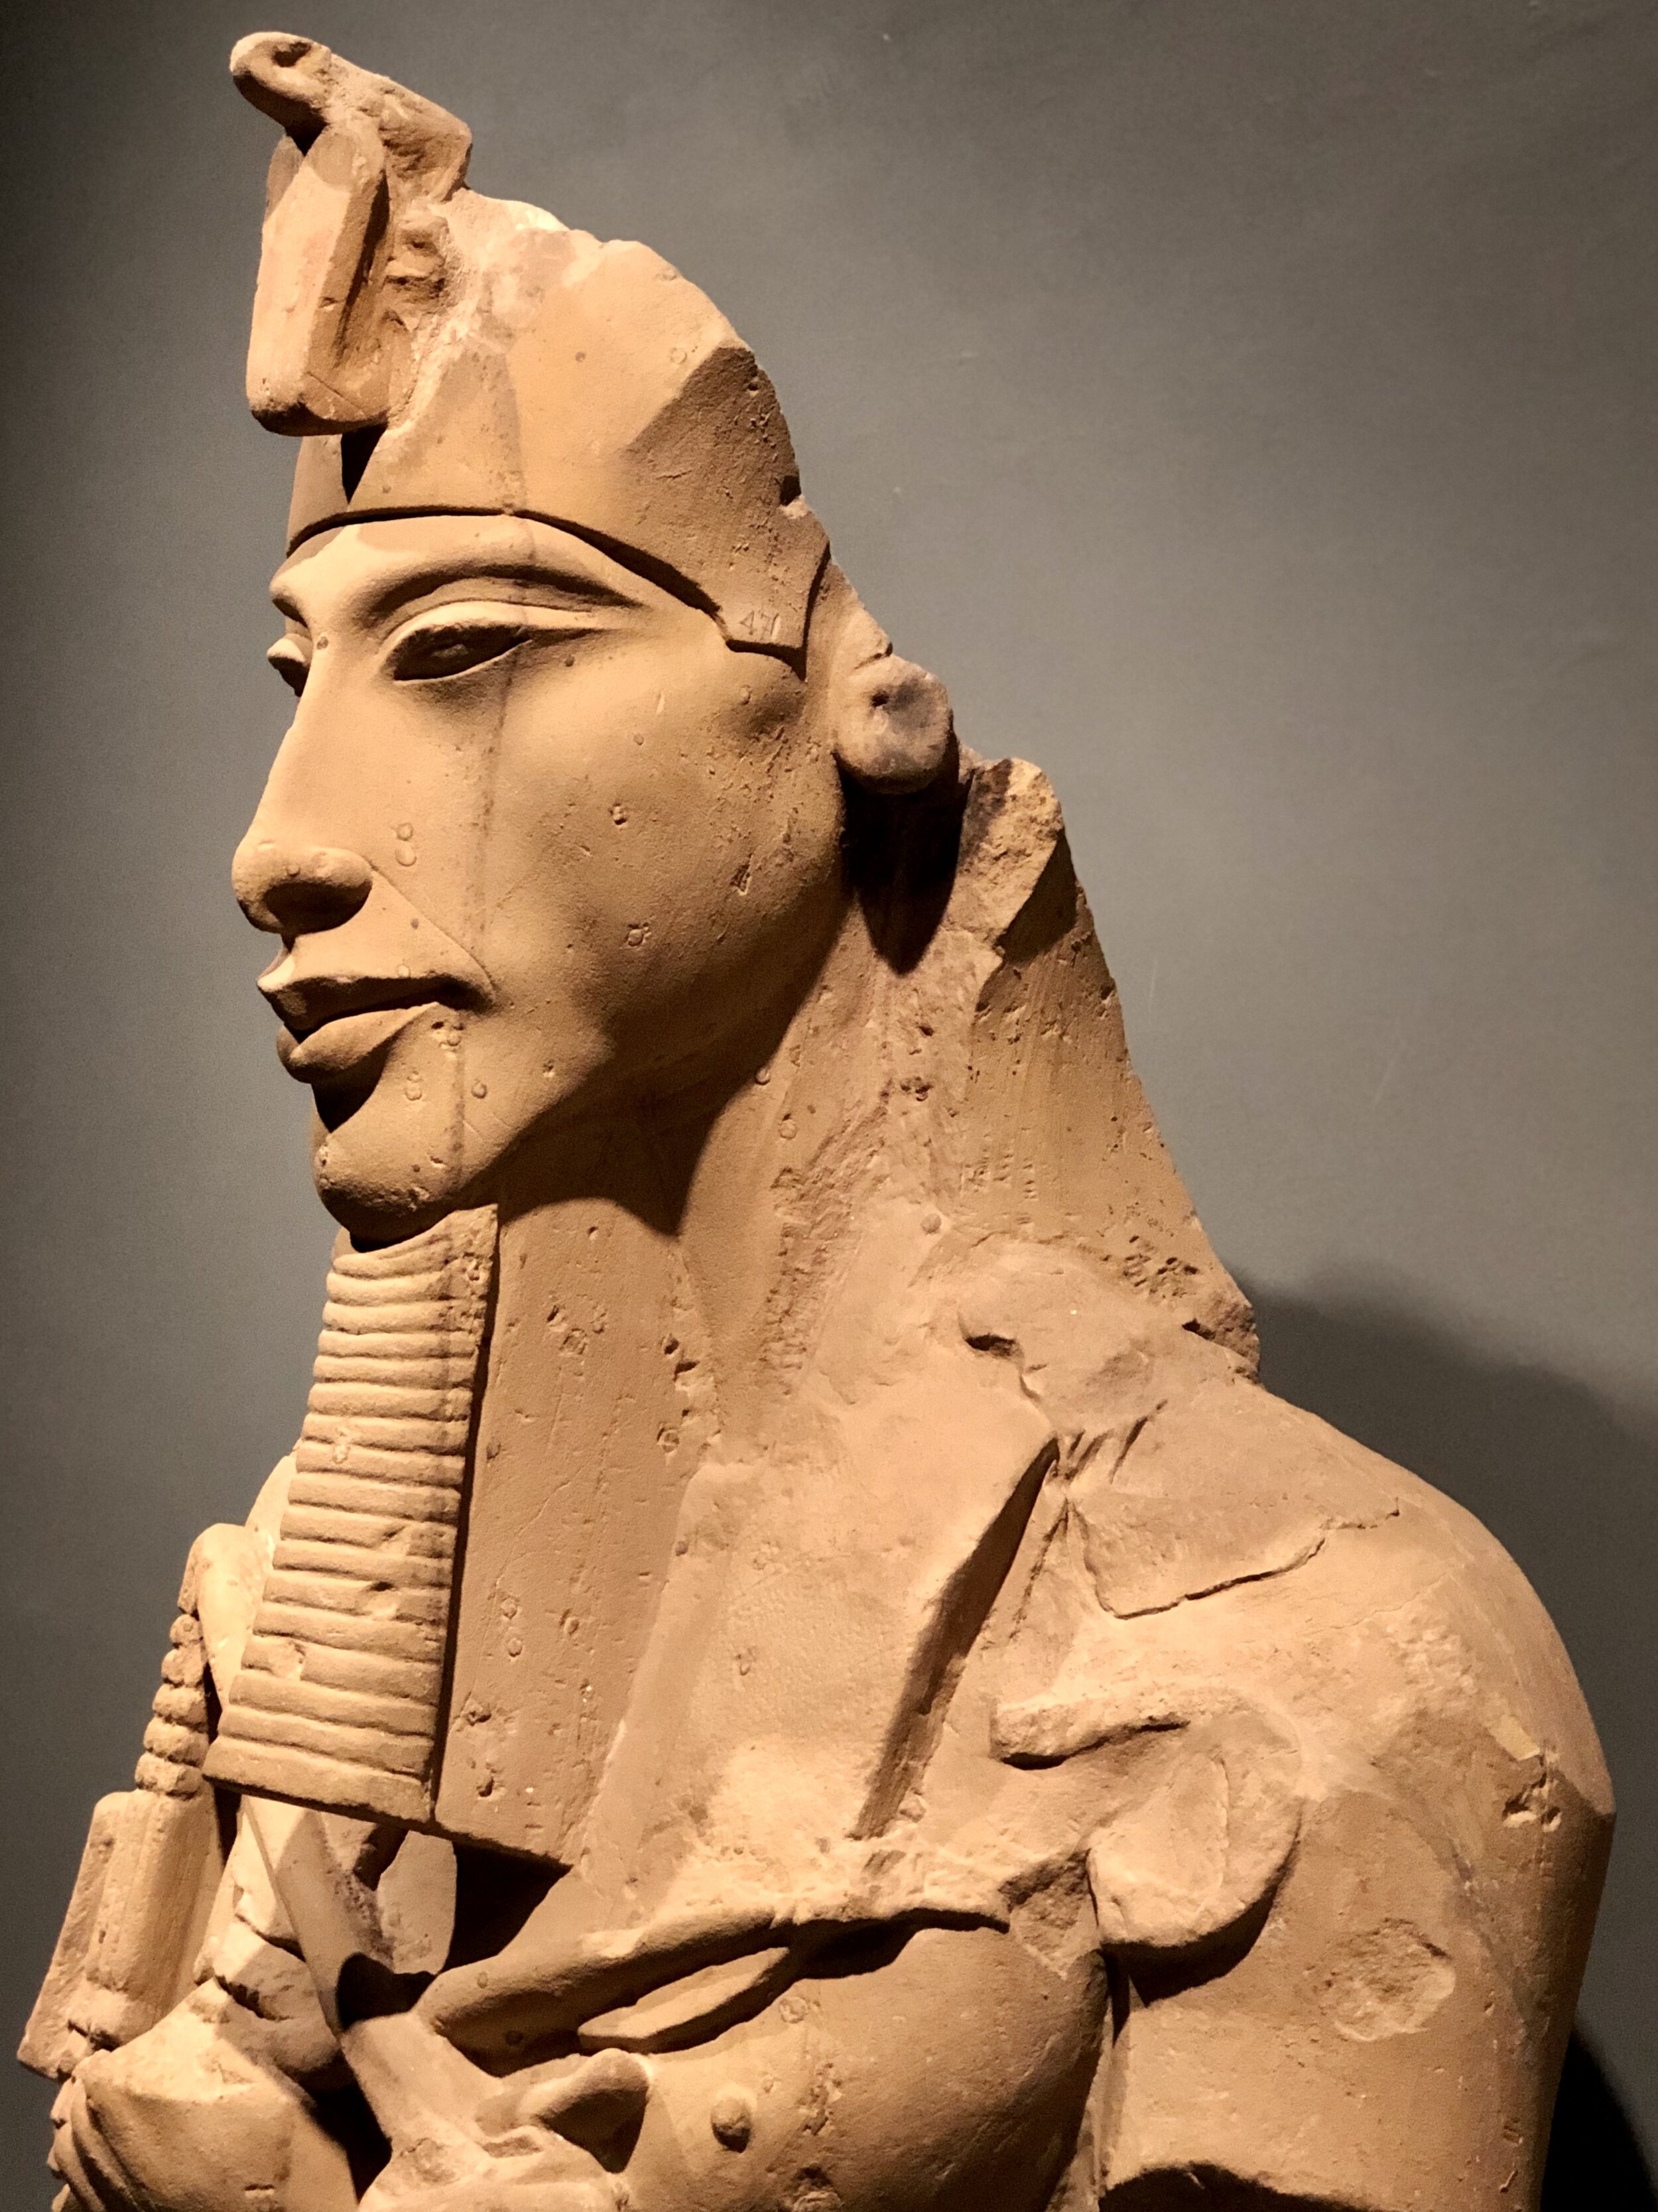 1X EGYPTIAN STATUE PHAROES MUMMY CLEOPATRA  GODS PYRAMIDS TUTANKHAMUN NEFERTITI 